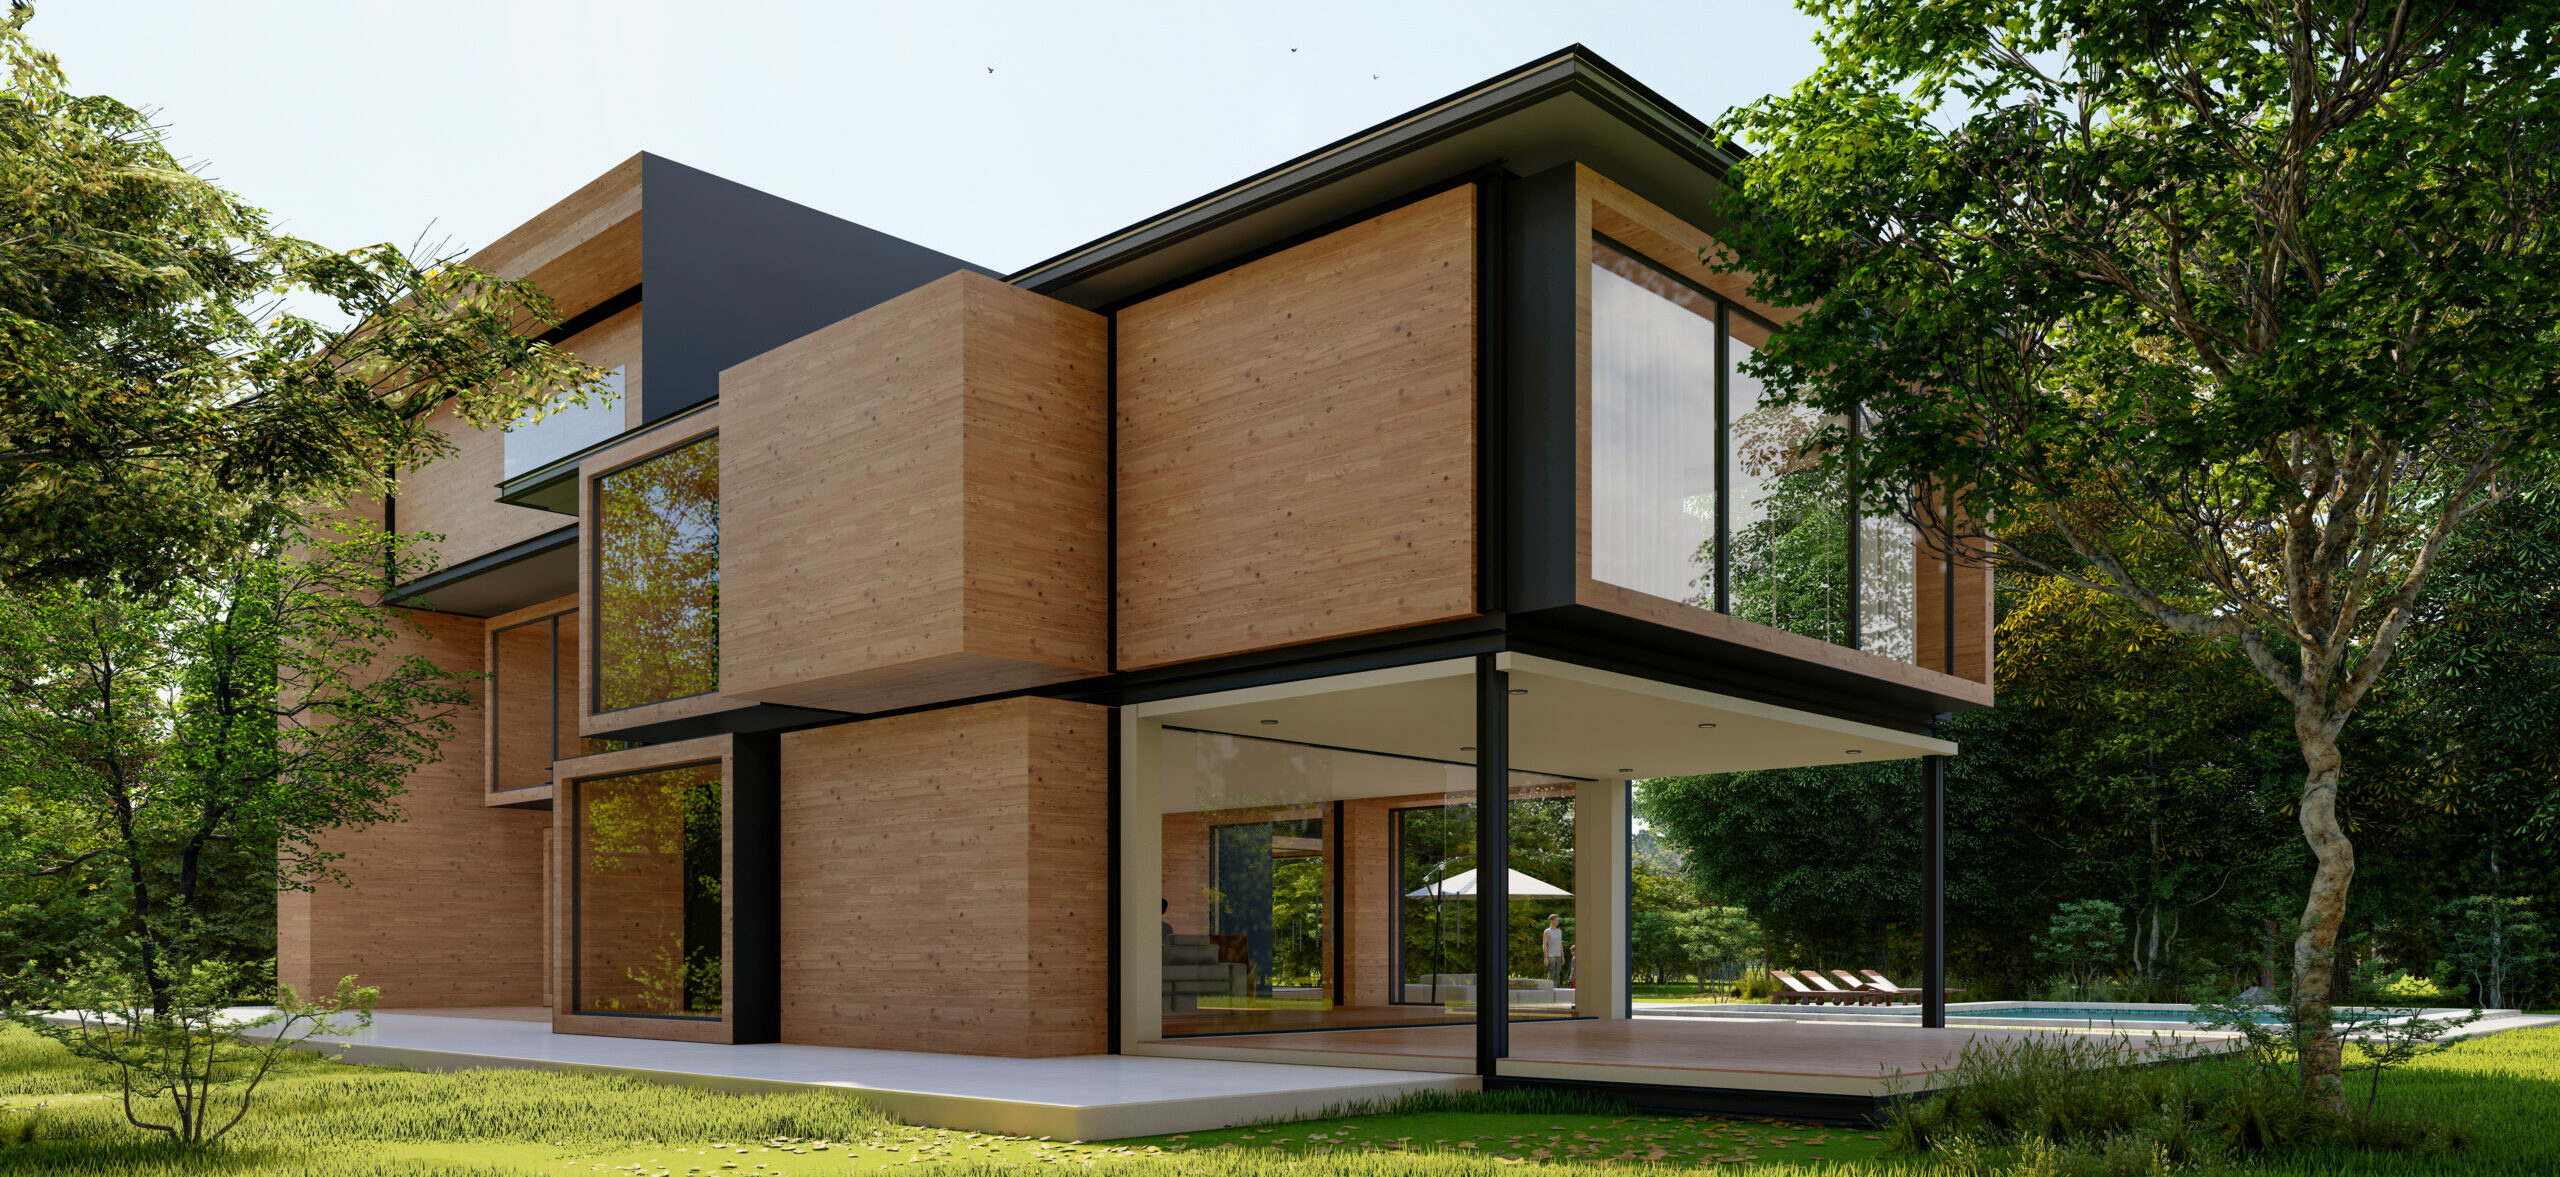 Casa contemporánea moderna en madera y hormigón